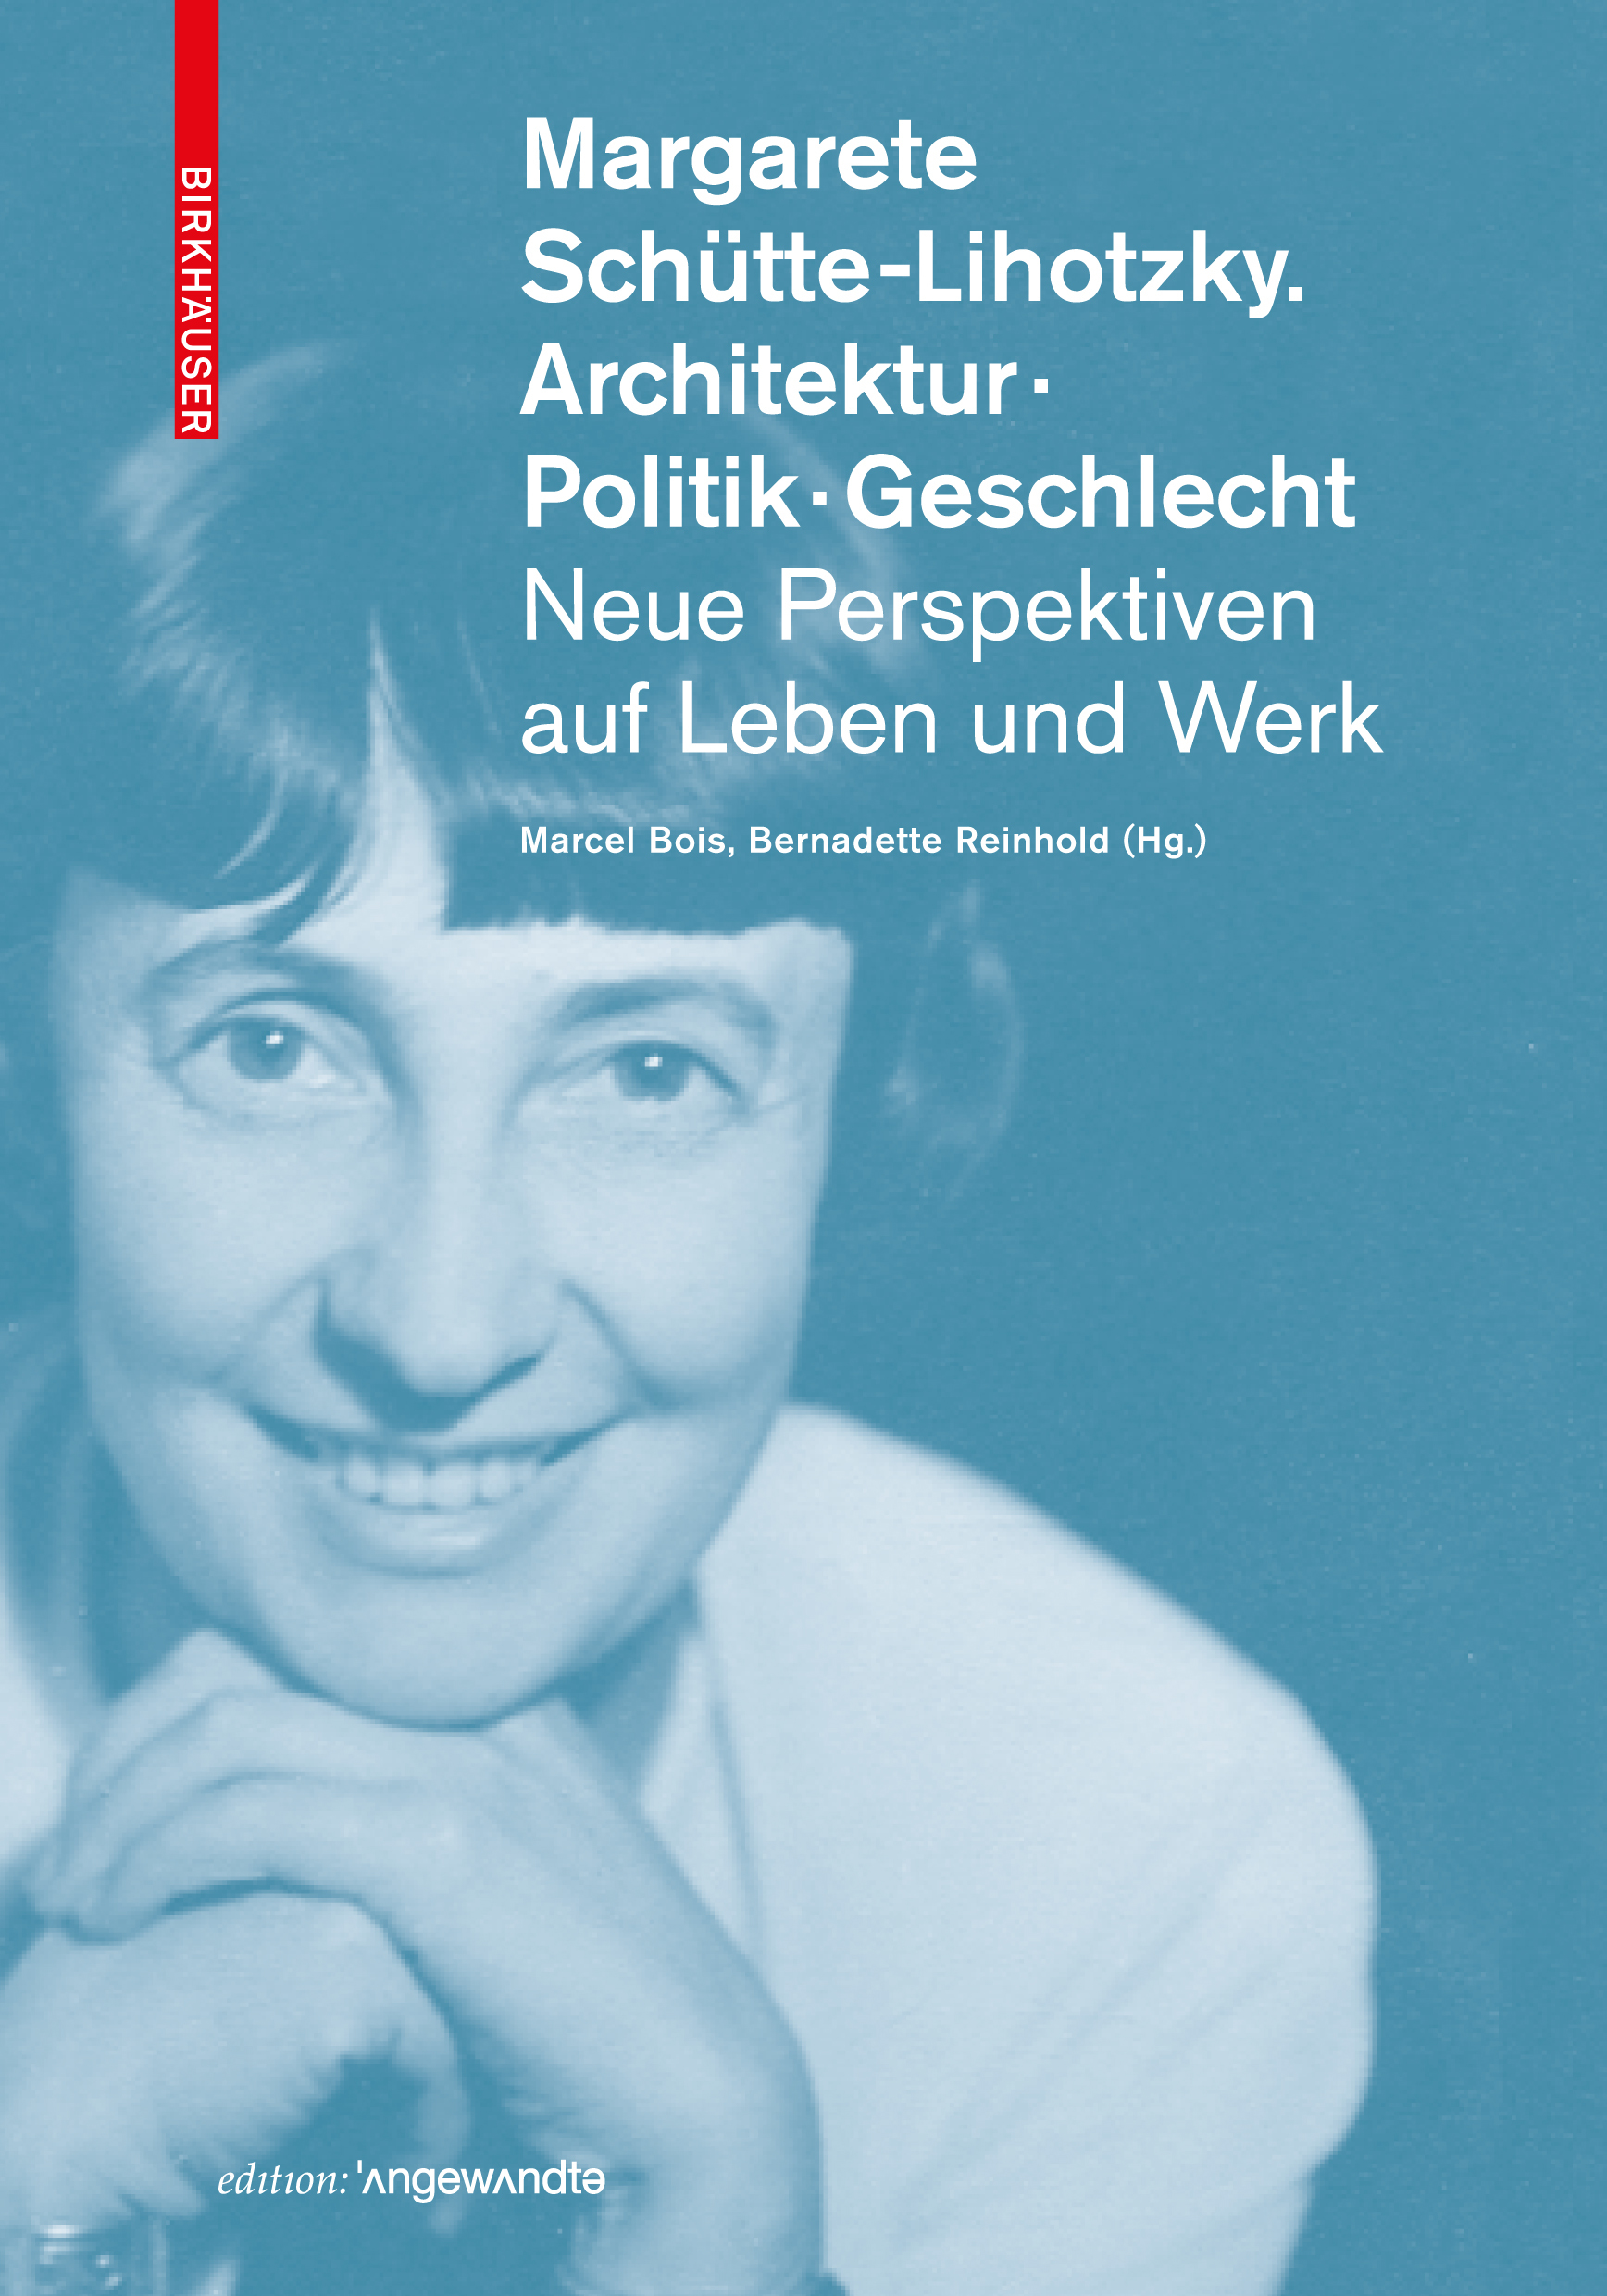 Bernadette Reinhold (hg. mit Marcel Bois),Margarete Schütte-Lihotzky. Architektur. Politik. Geschlecht. Neue Perspketiven auf Leben und Werk, Edition Angewandte, Basel Birkhäuser 2019